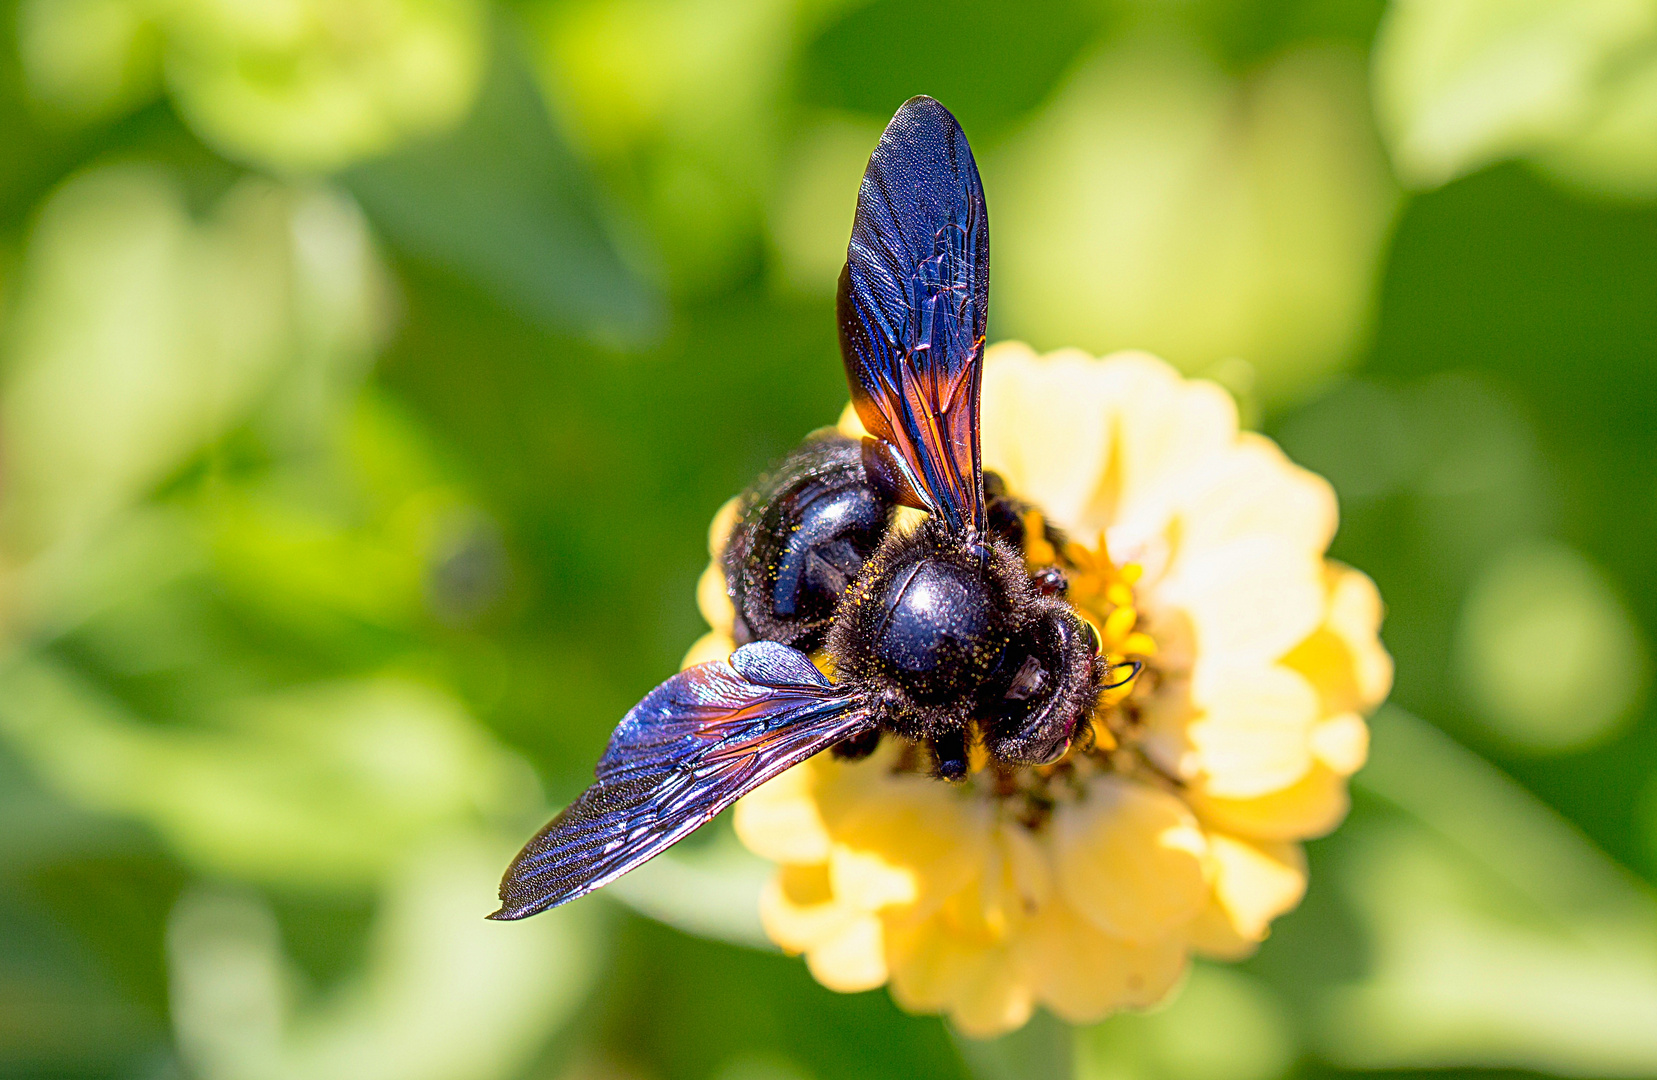 Rettet die Artenvielfalt! - die Blauschwarze Holzbiene